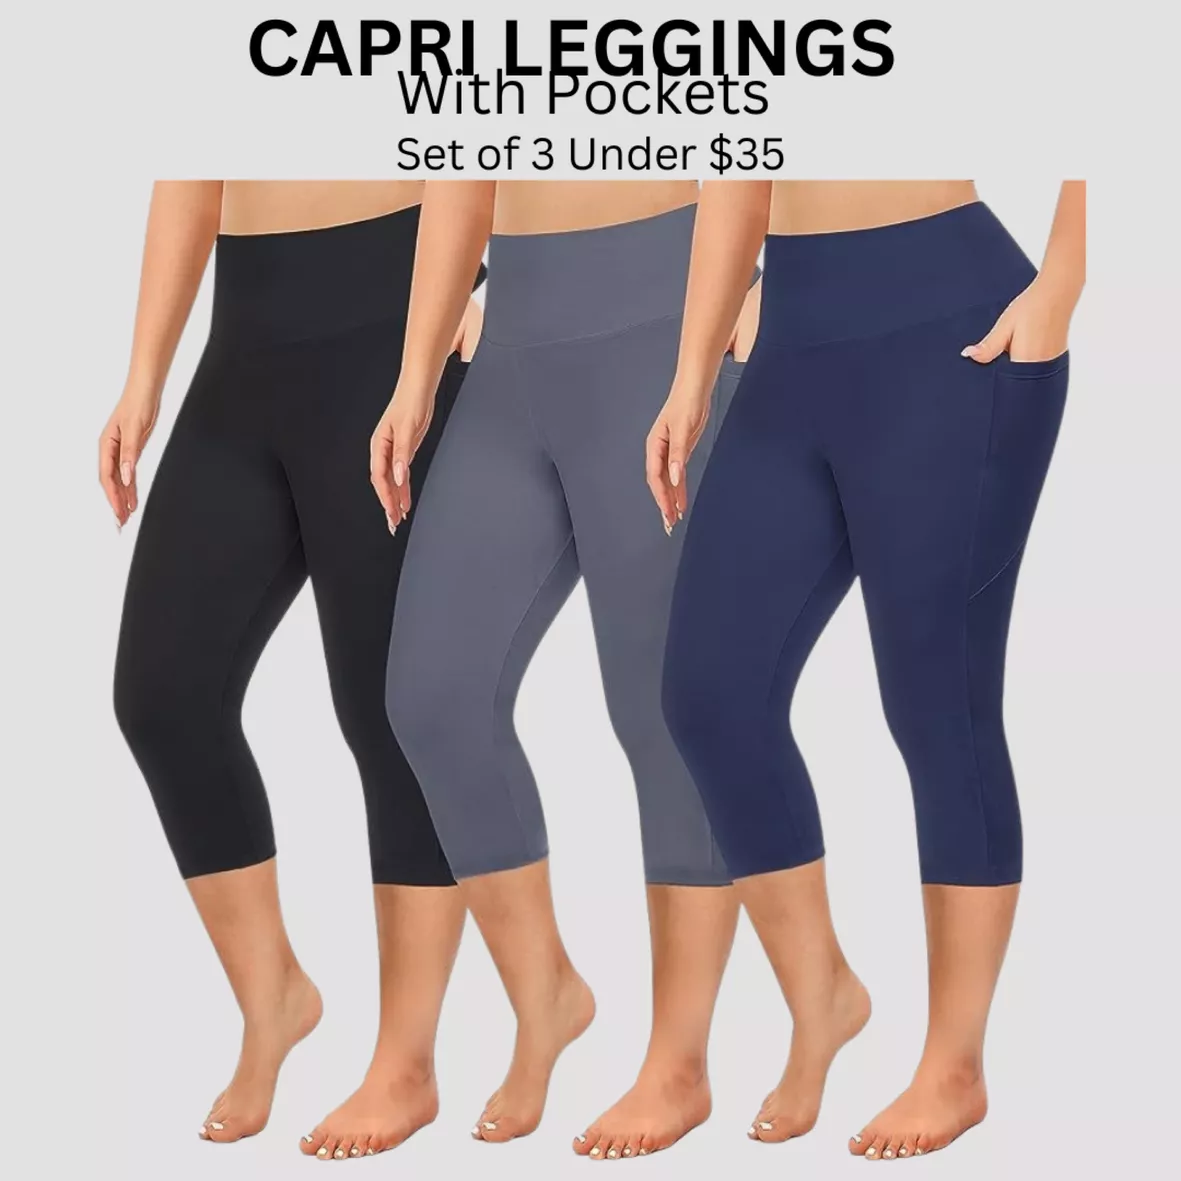  FULLSOFT 3 Pack Capri Leggings for Women - High